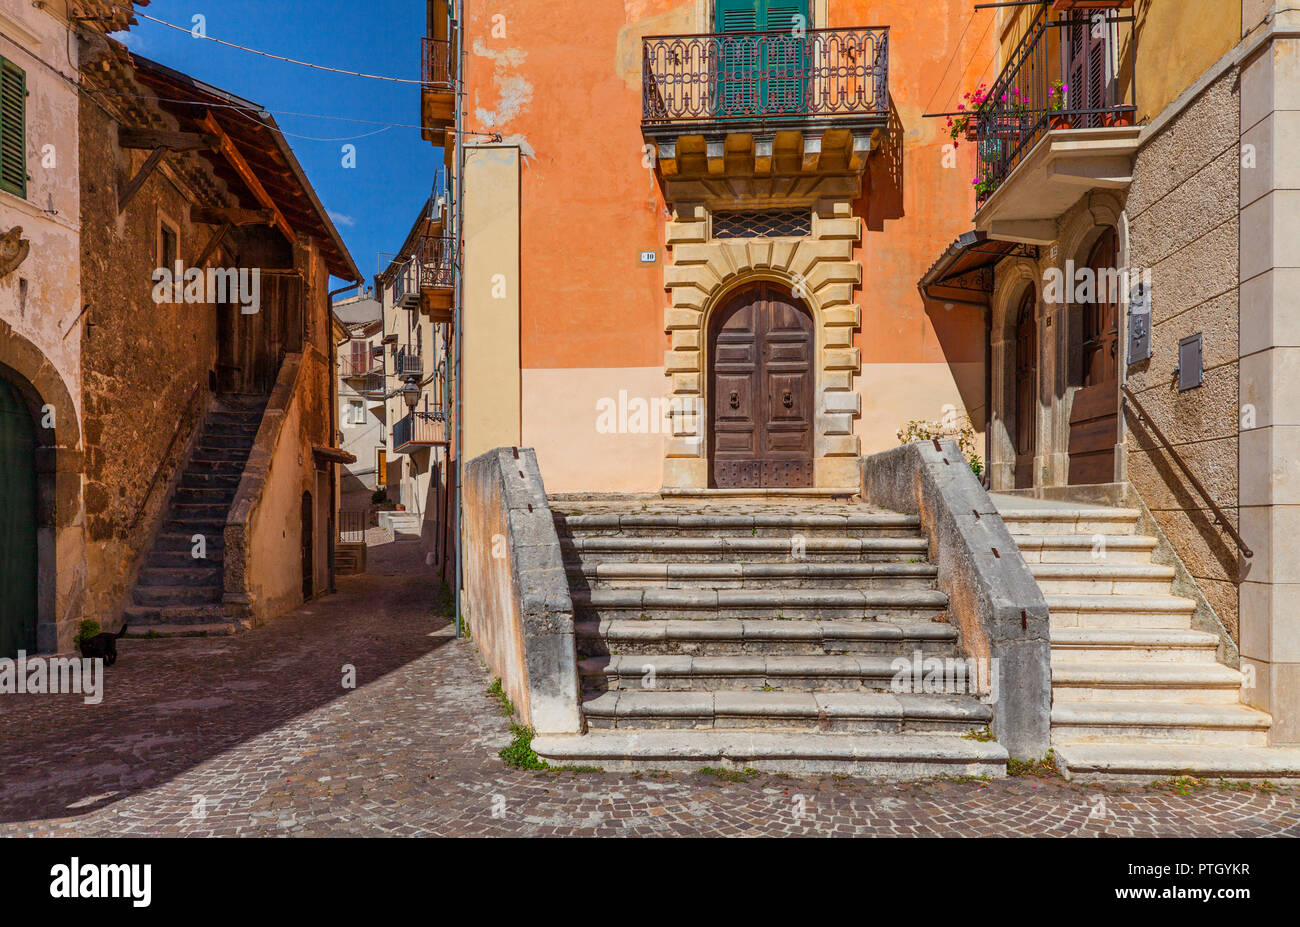 Una tranquila escena callejera en Castrovalva, situado en la provincia de L'Aquila en la región Abruzzo de Italia. Foto de stock